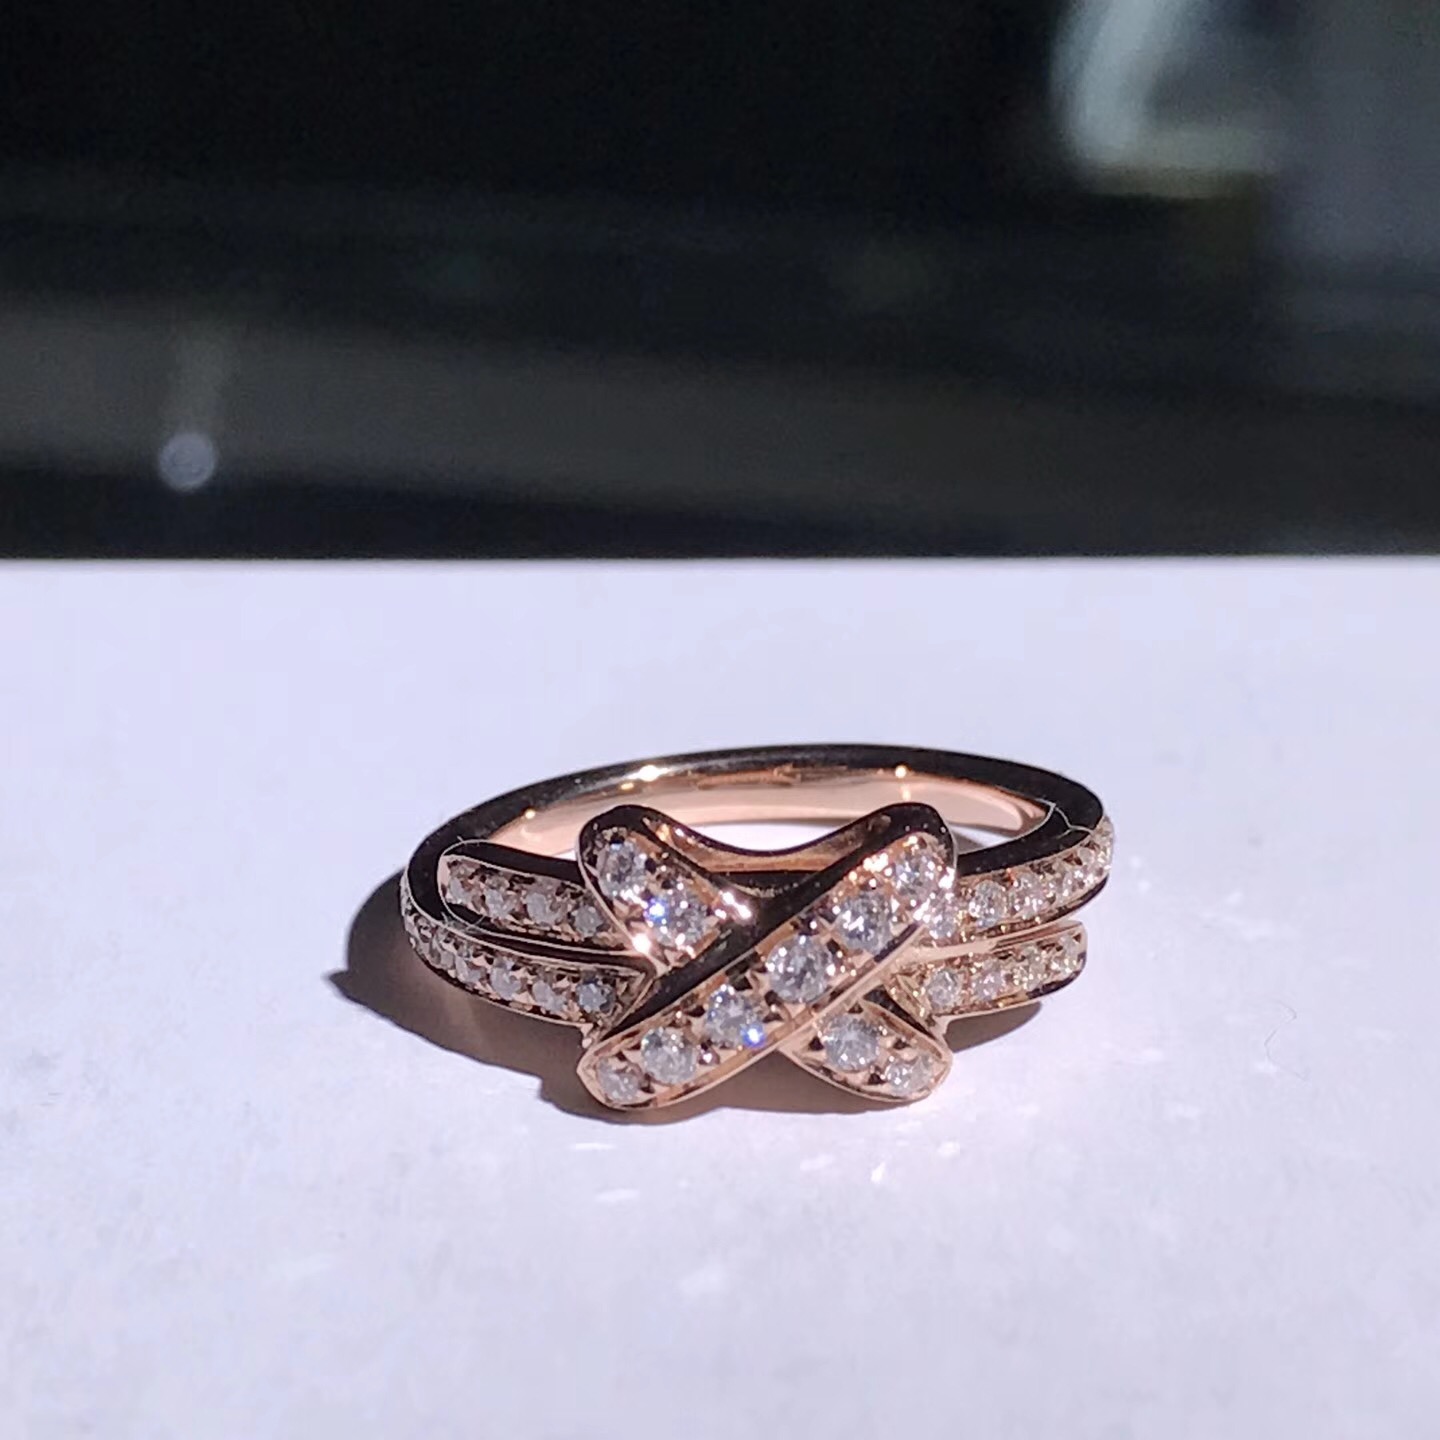 Liens de Chaumet anillo Premiers gravámenes en oro rosa de 18K con el diamante de extendido